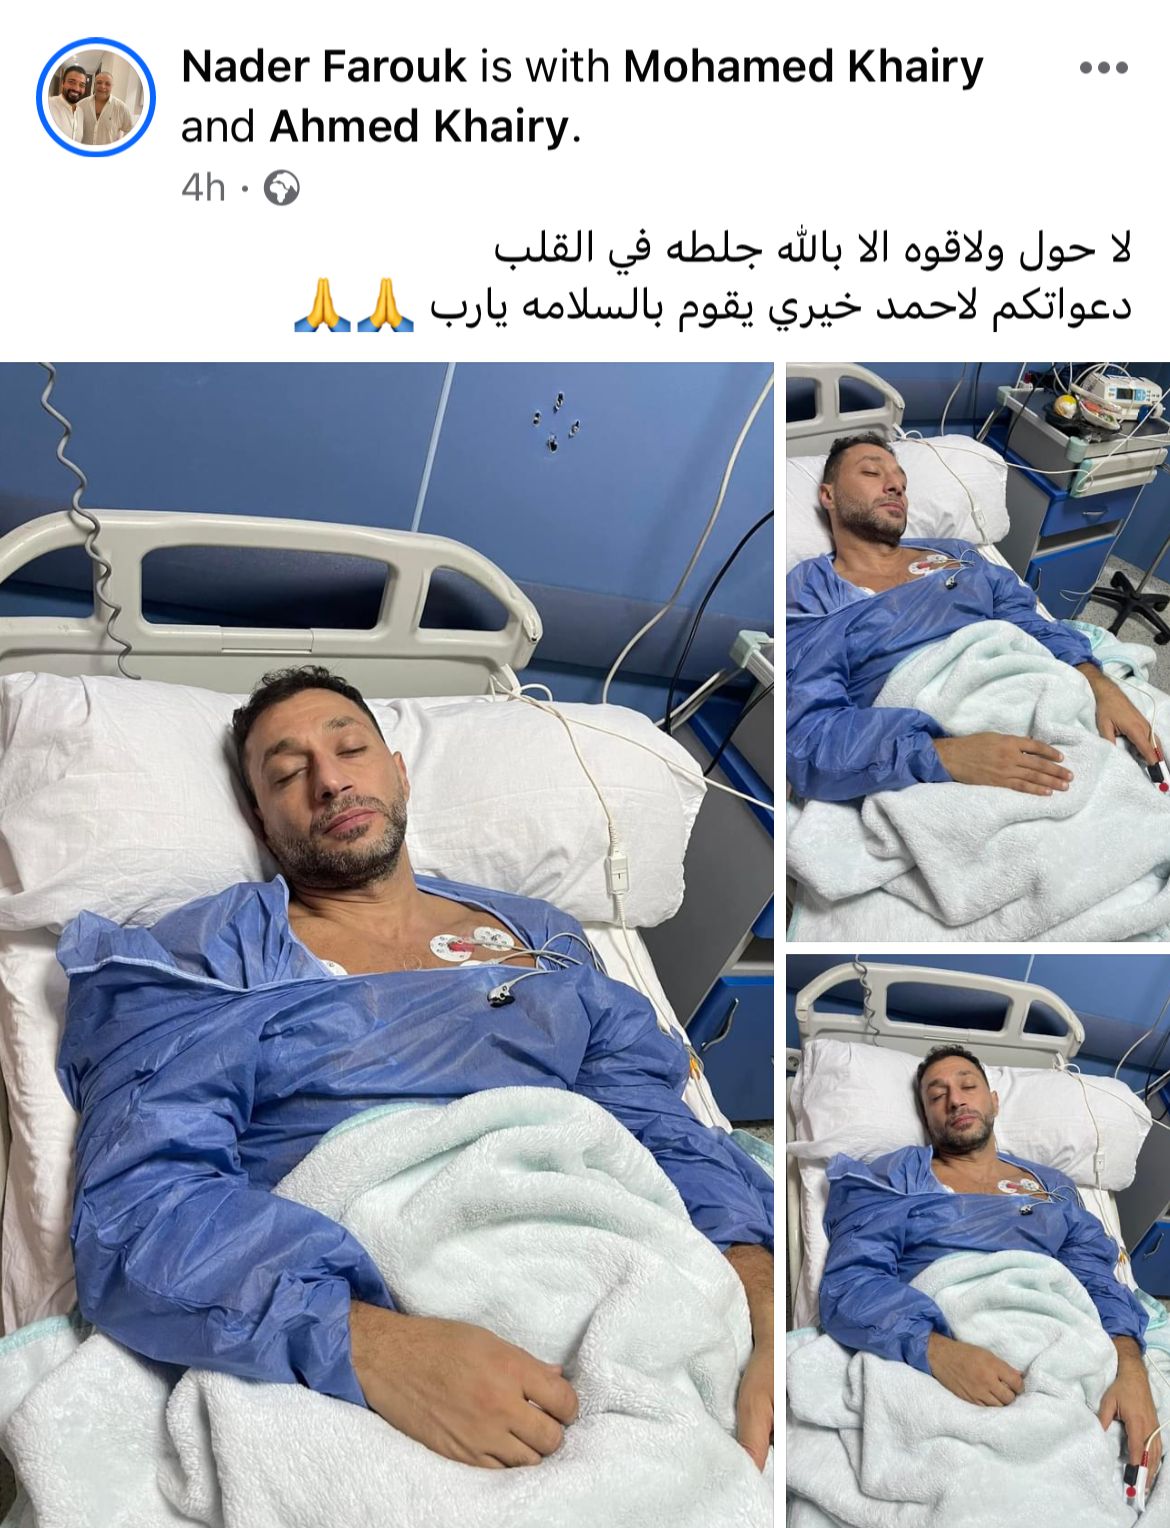 الحاجة إلى المعلومات الأساسية أحمدي بأزمة صحية ودخول المستشفى